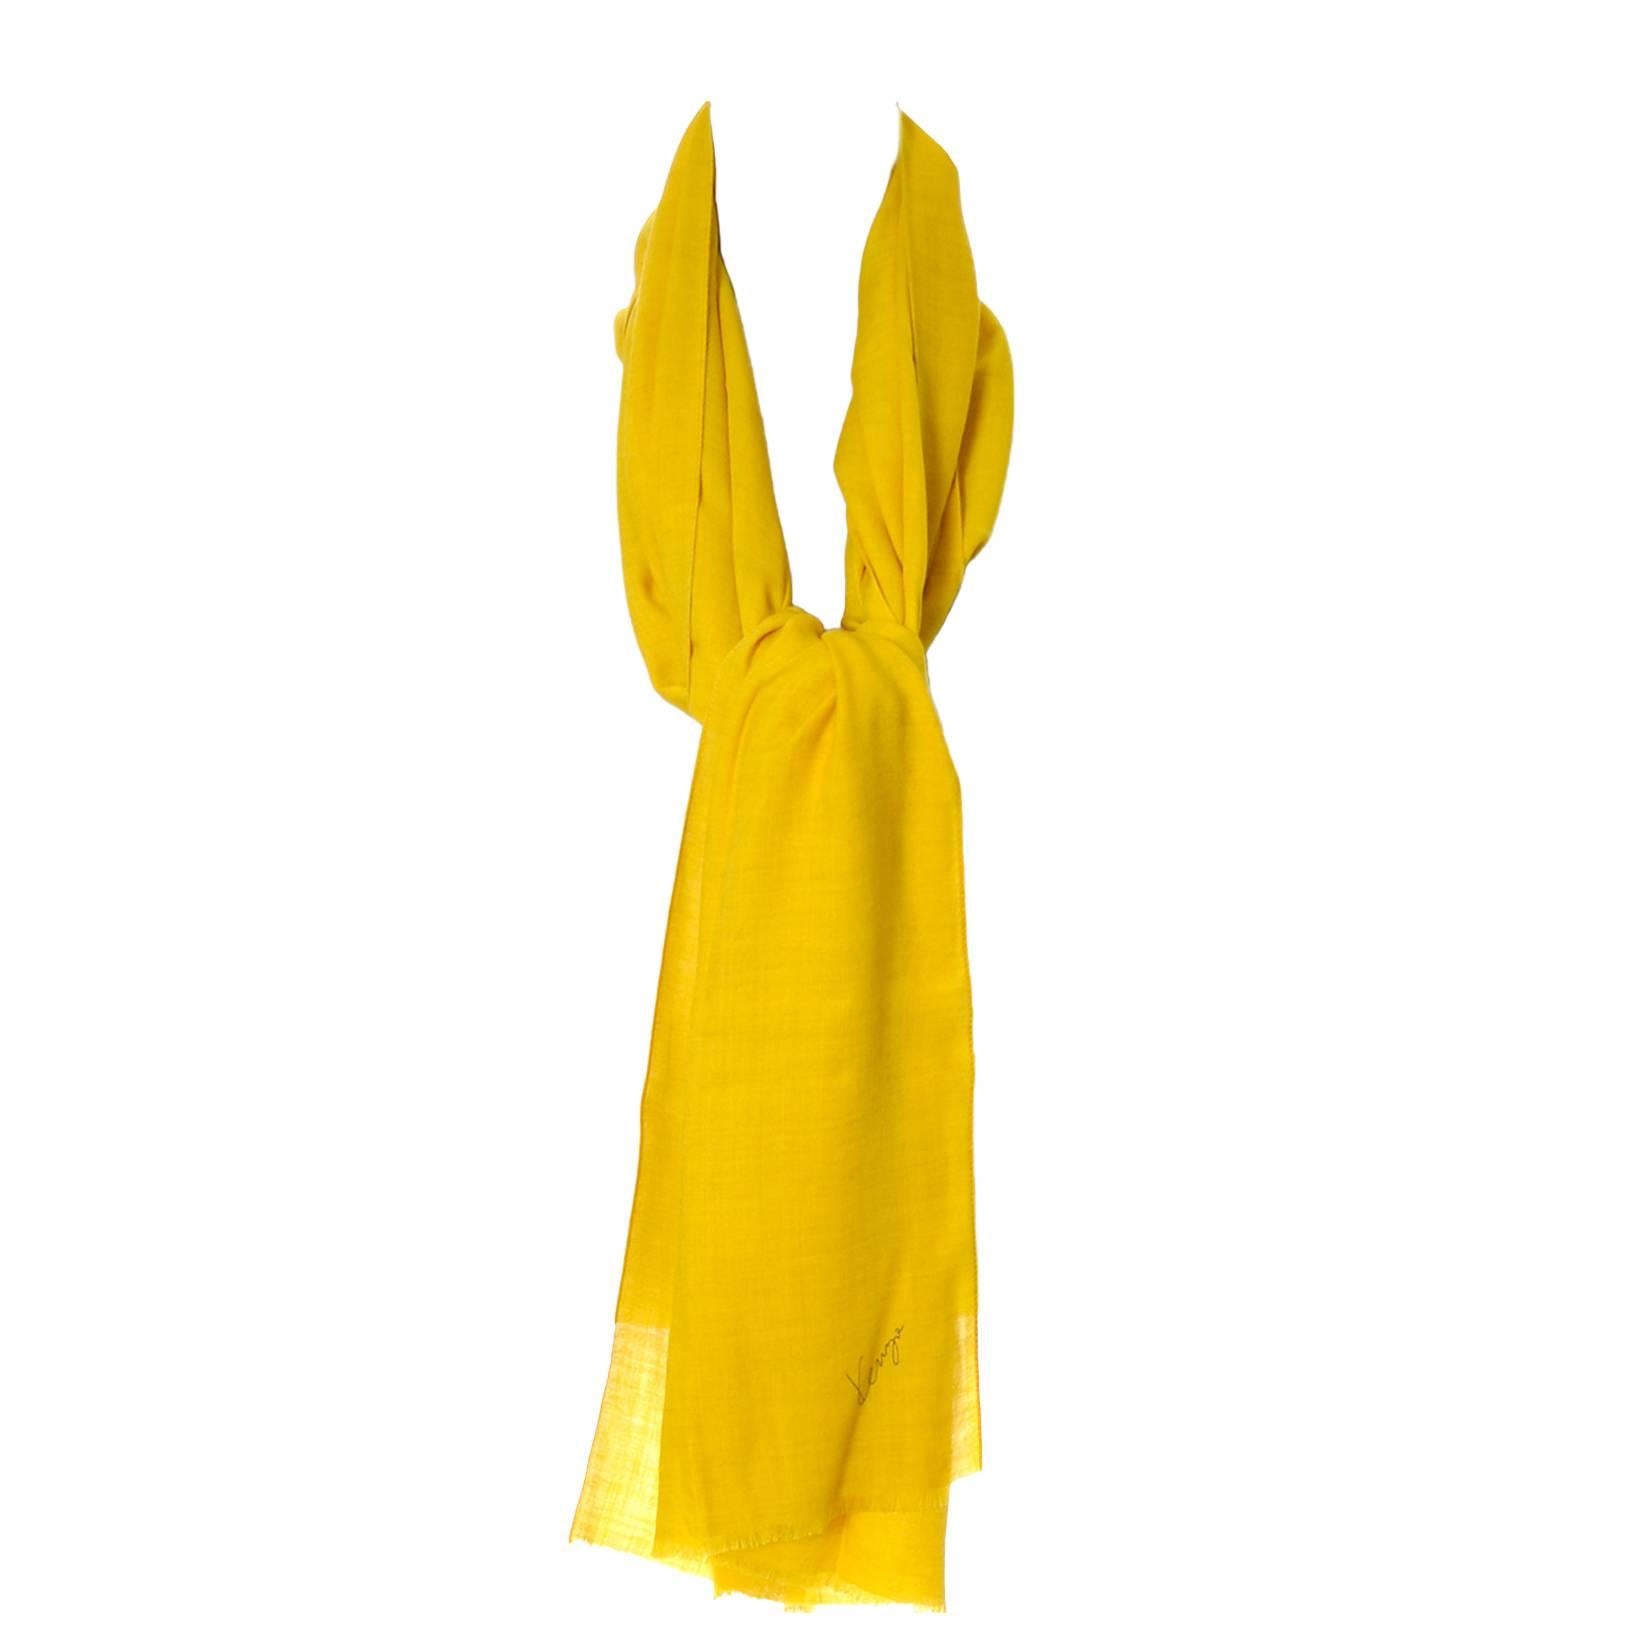 Kenzo Paris - Écharpe vintage en laine jaune moutarde avec logo caractéristique, 203 cm de long